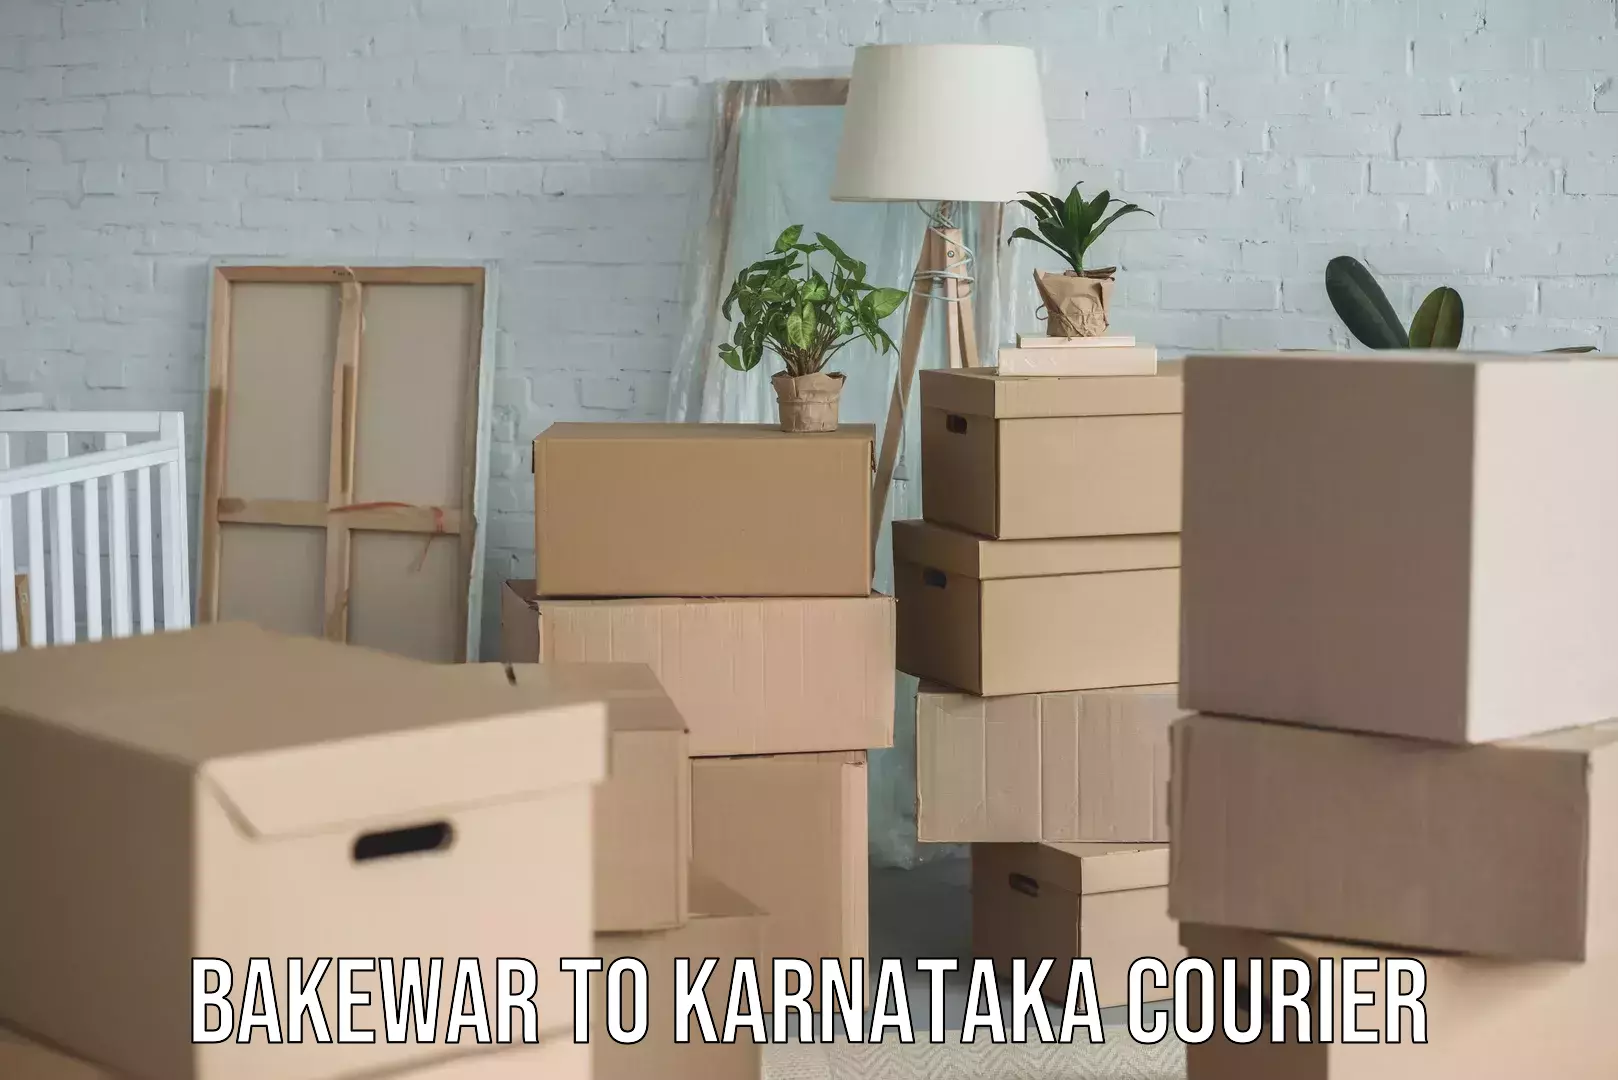 Advanced shipping technology Bakewar to Karnataka